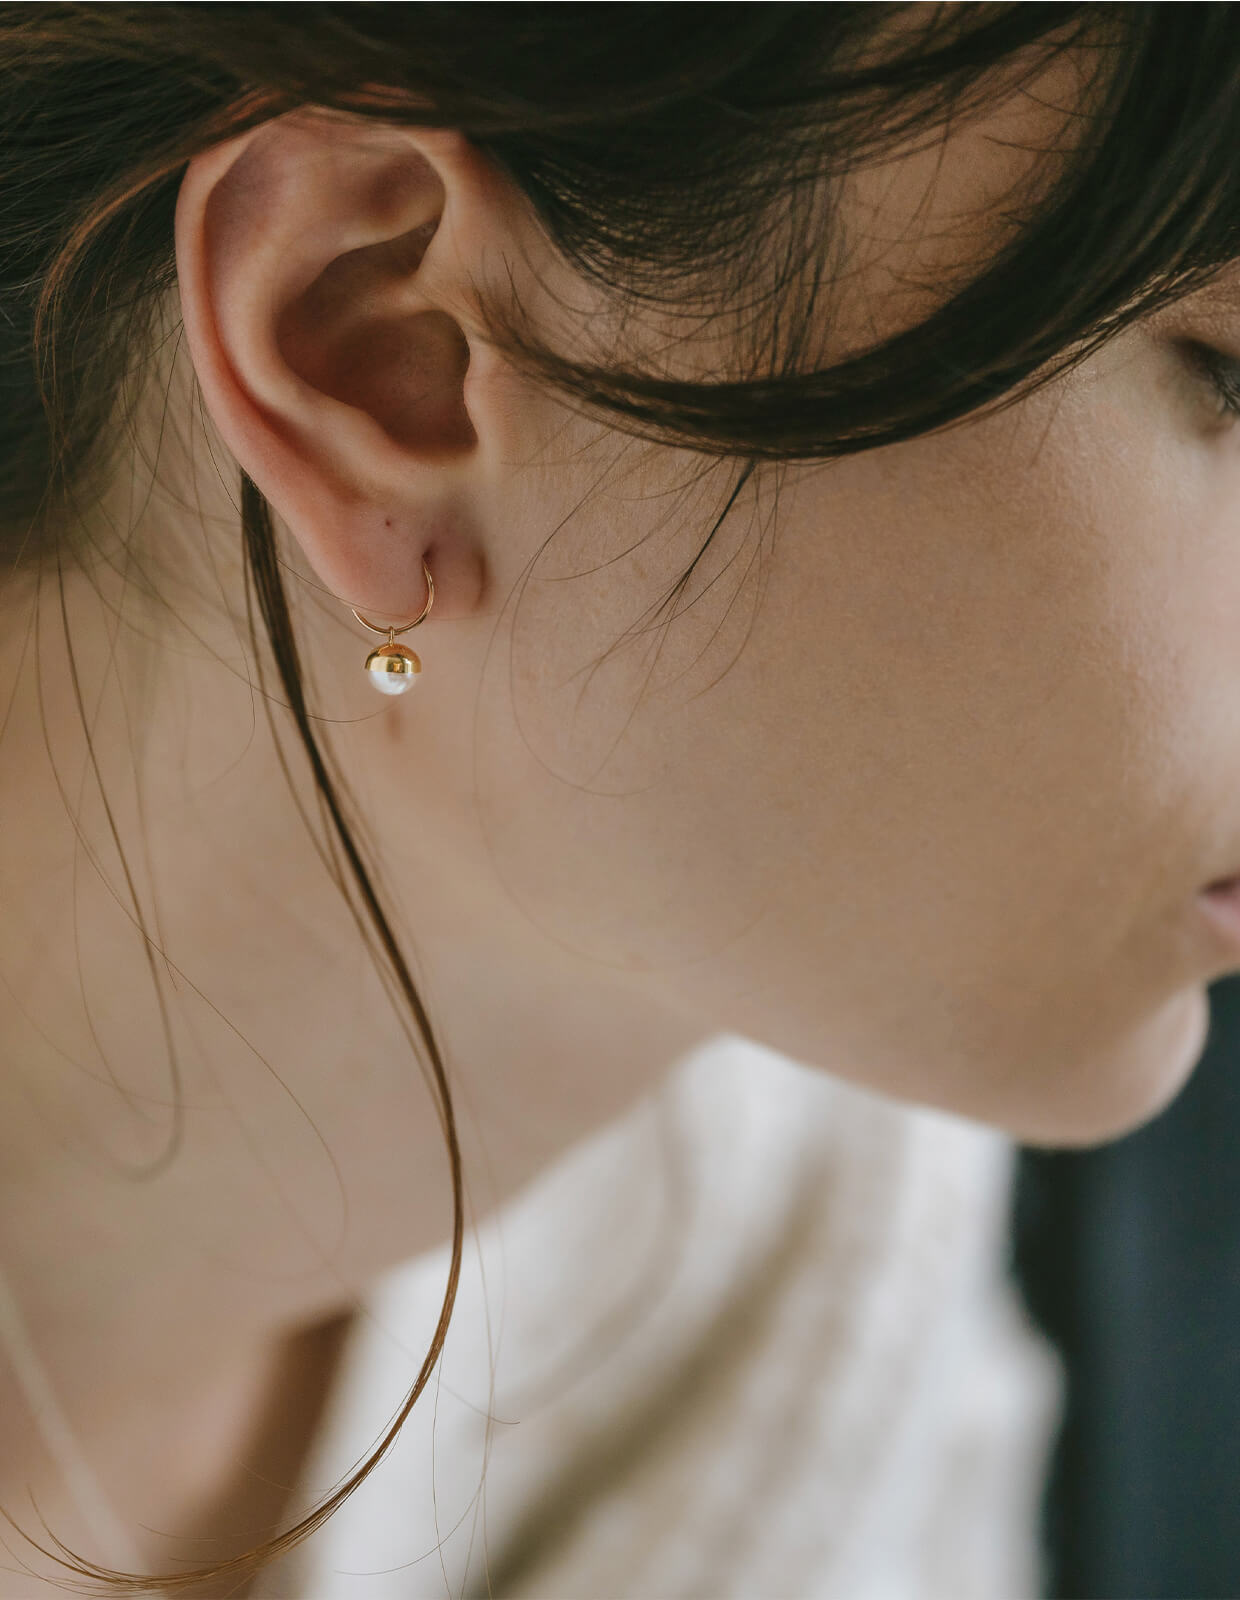 18K Ping Gold Swirl Pearl Earrings | SUZURAN